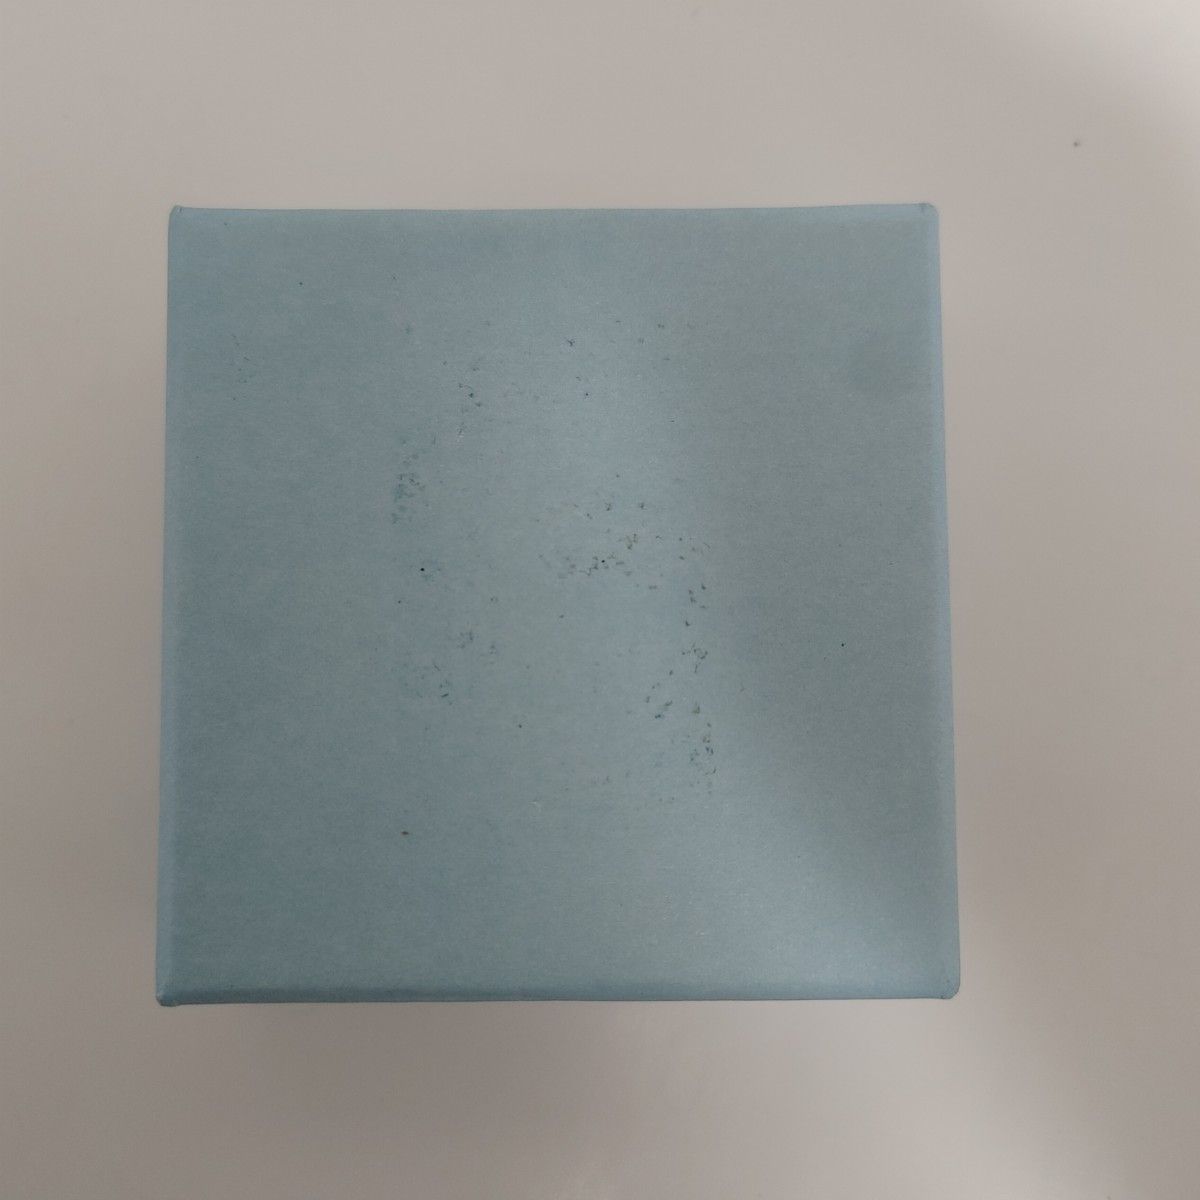 【小物入れに】MirrorSilver ギフトボックス アクセサリーケース 中古 自宅用 頑丈 コンパクトサイズ リボン ブルー